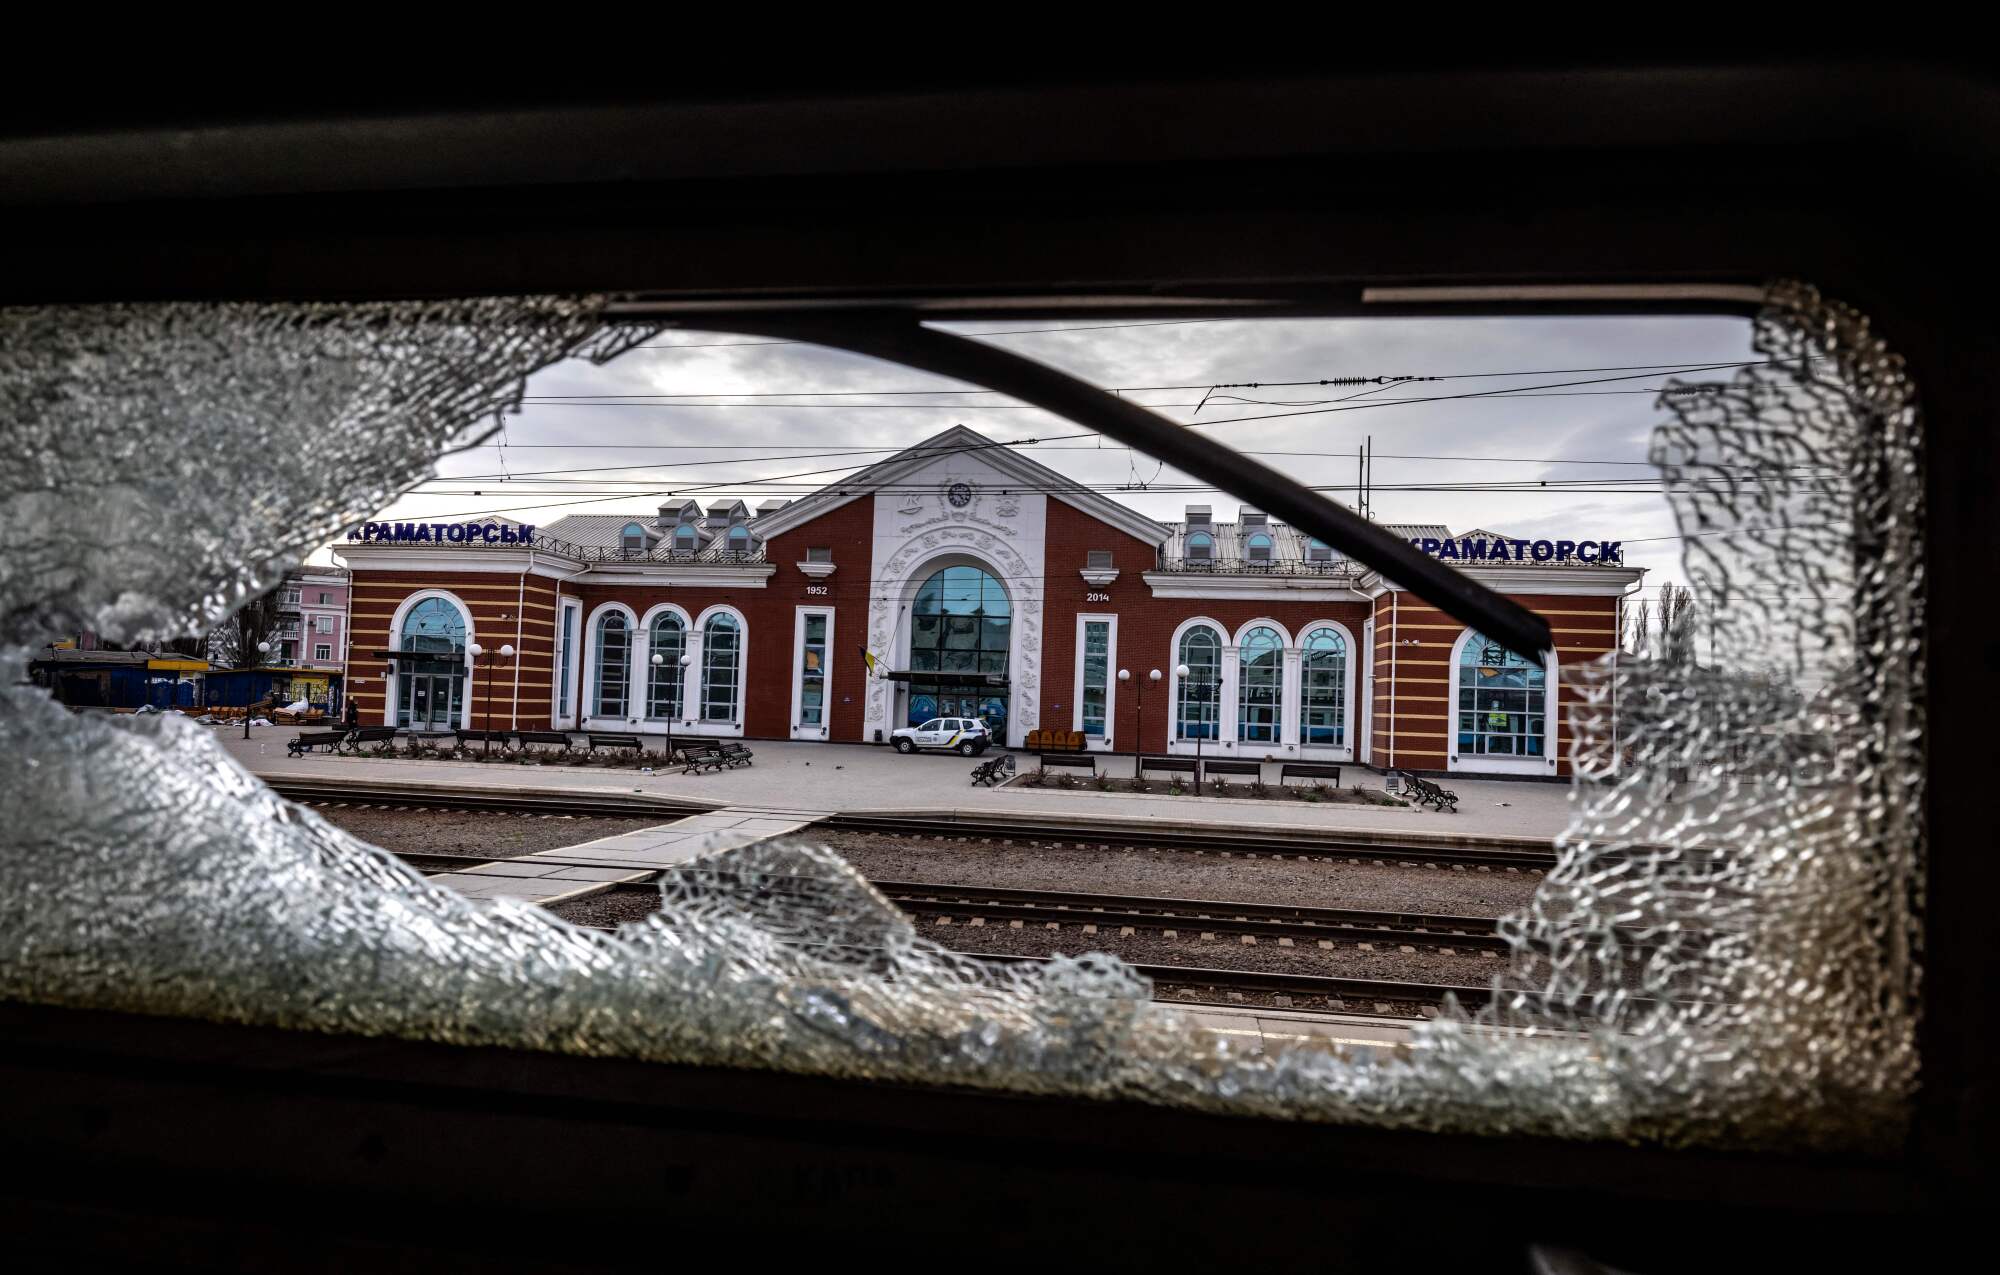 Bir tren istasyonu, bir tren penceresinin kırık camından çerçevelenmiştir.